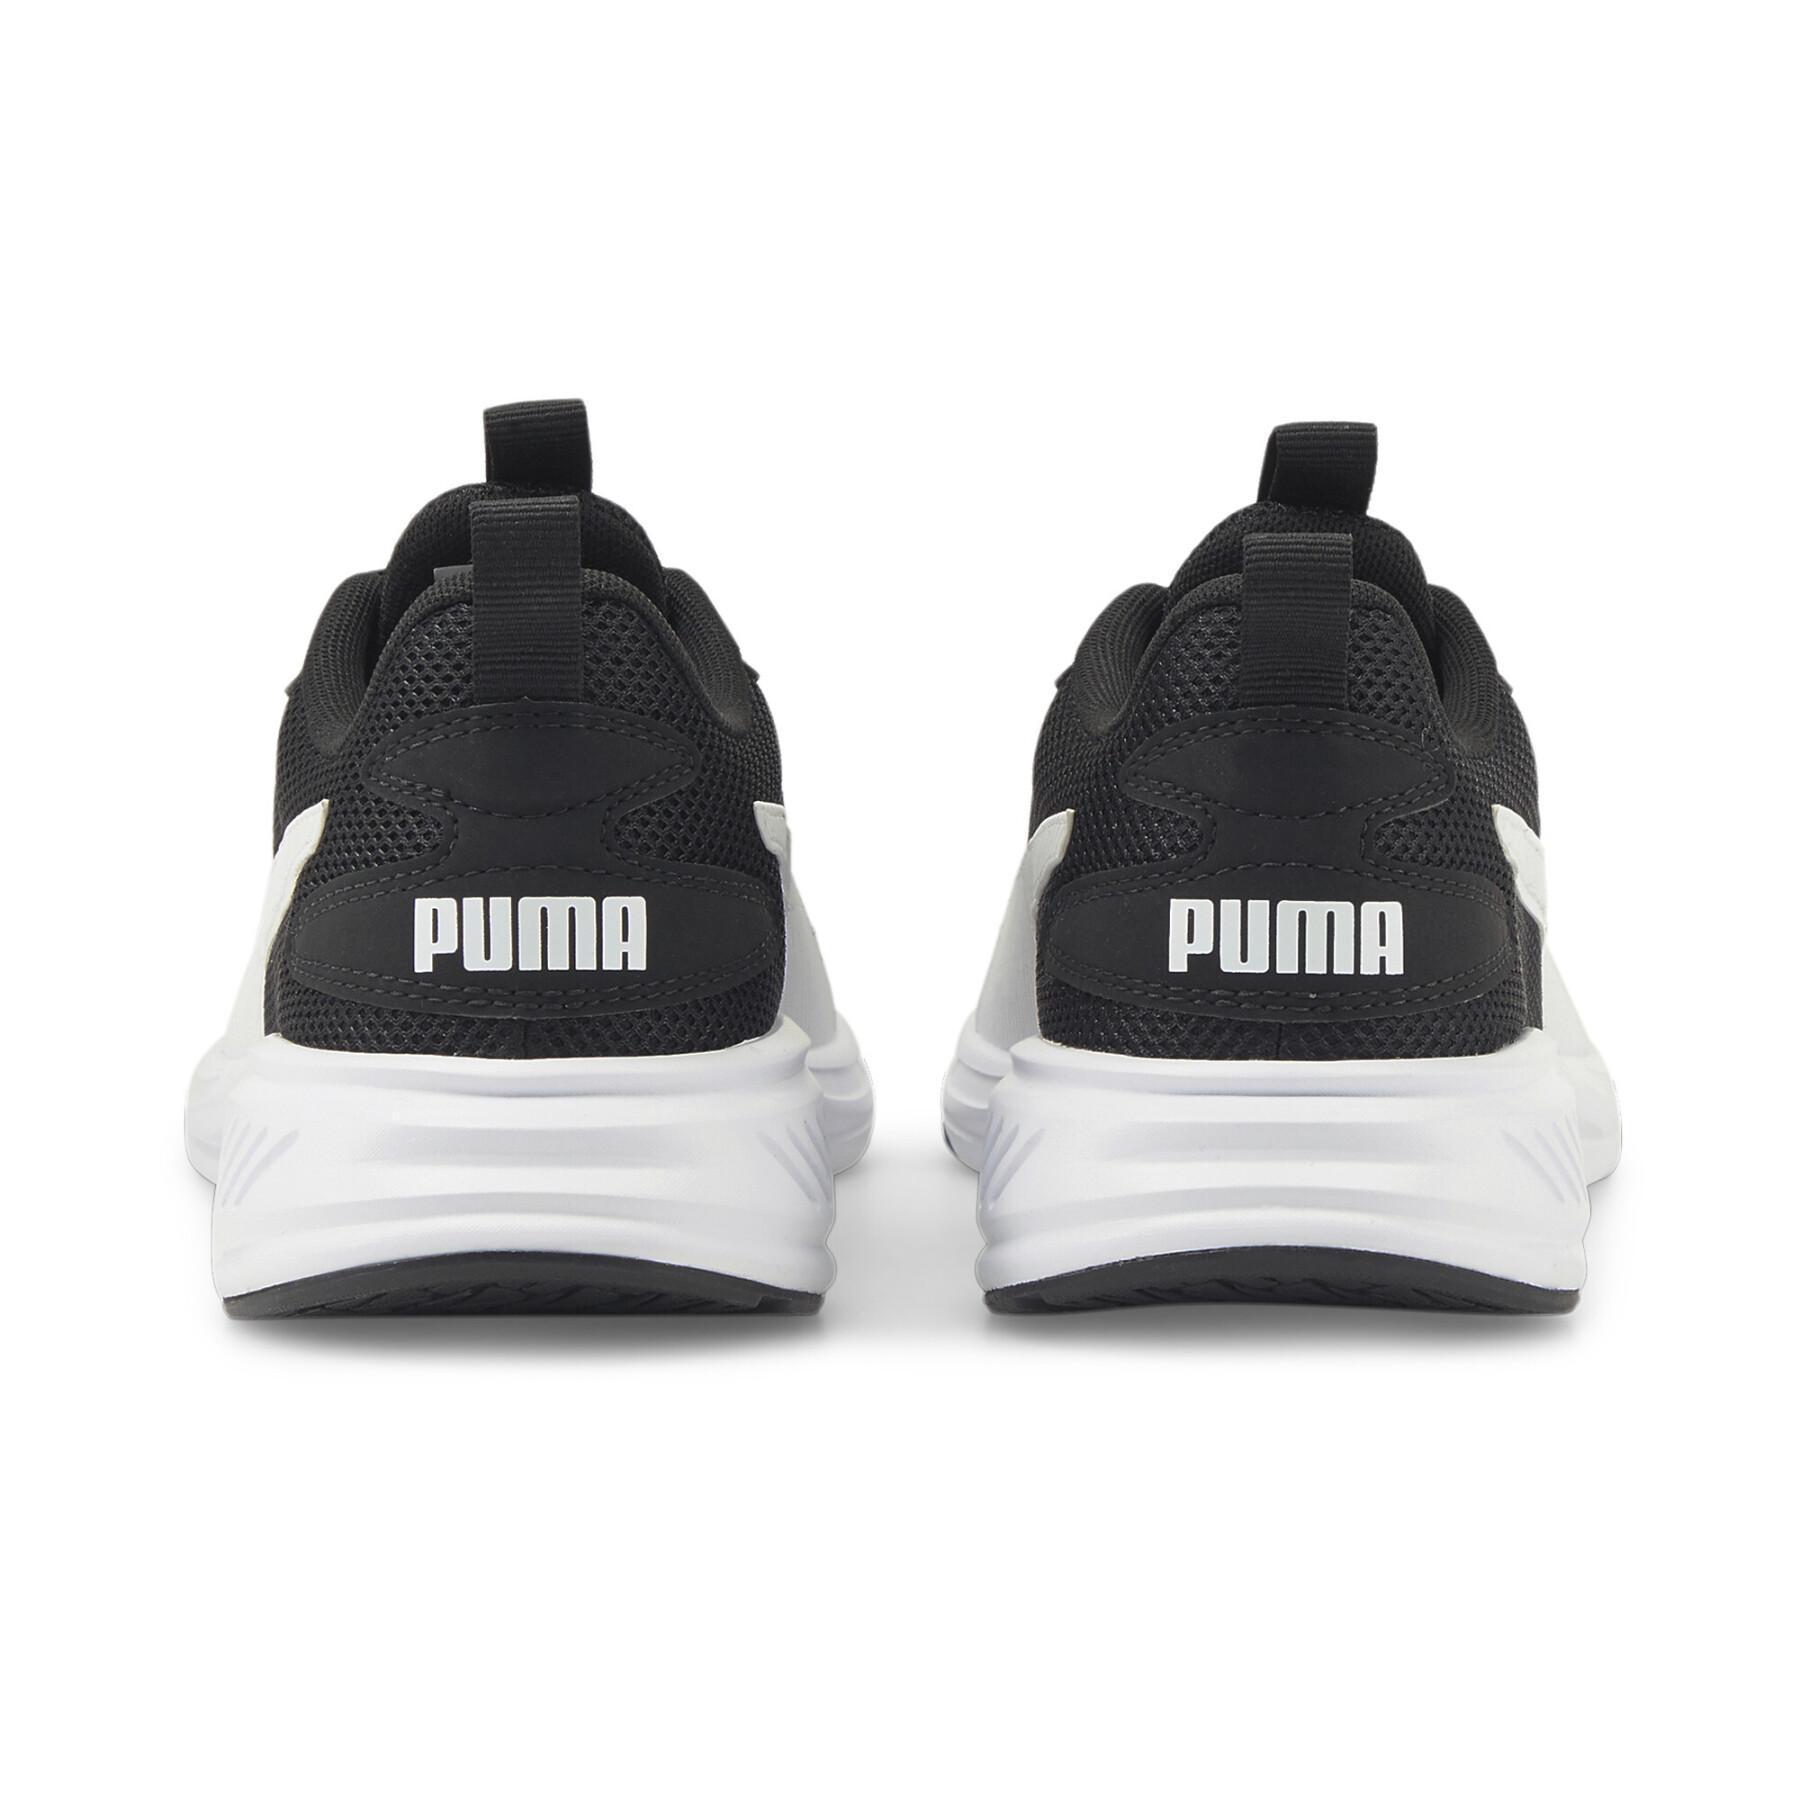 Schuhe Puma Incinerate